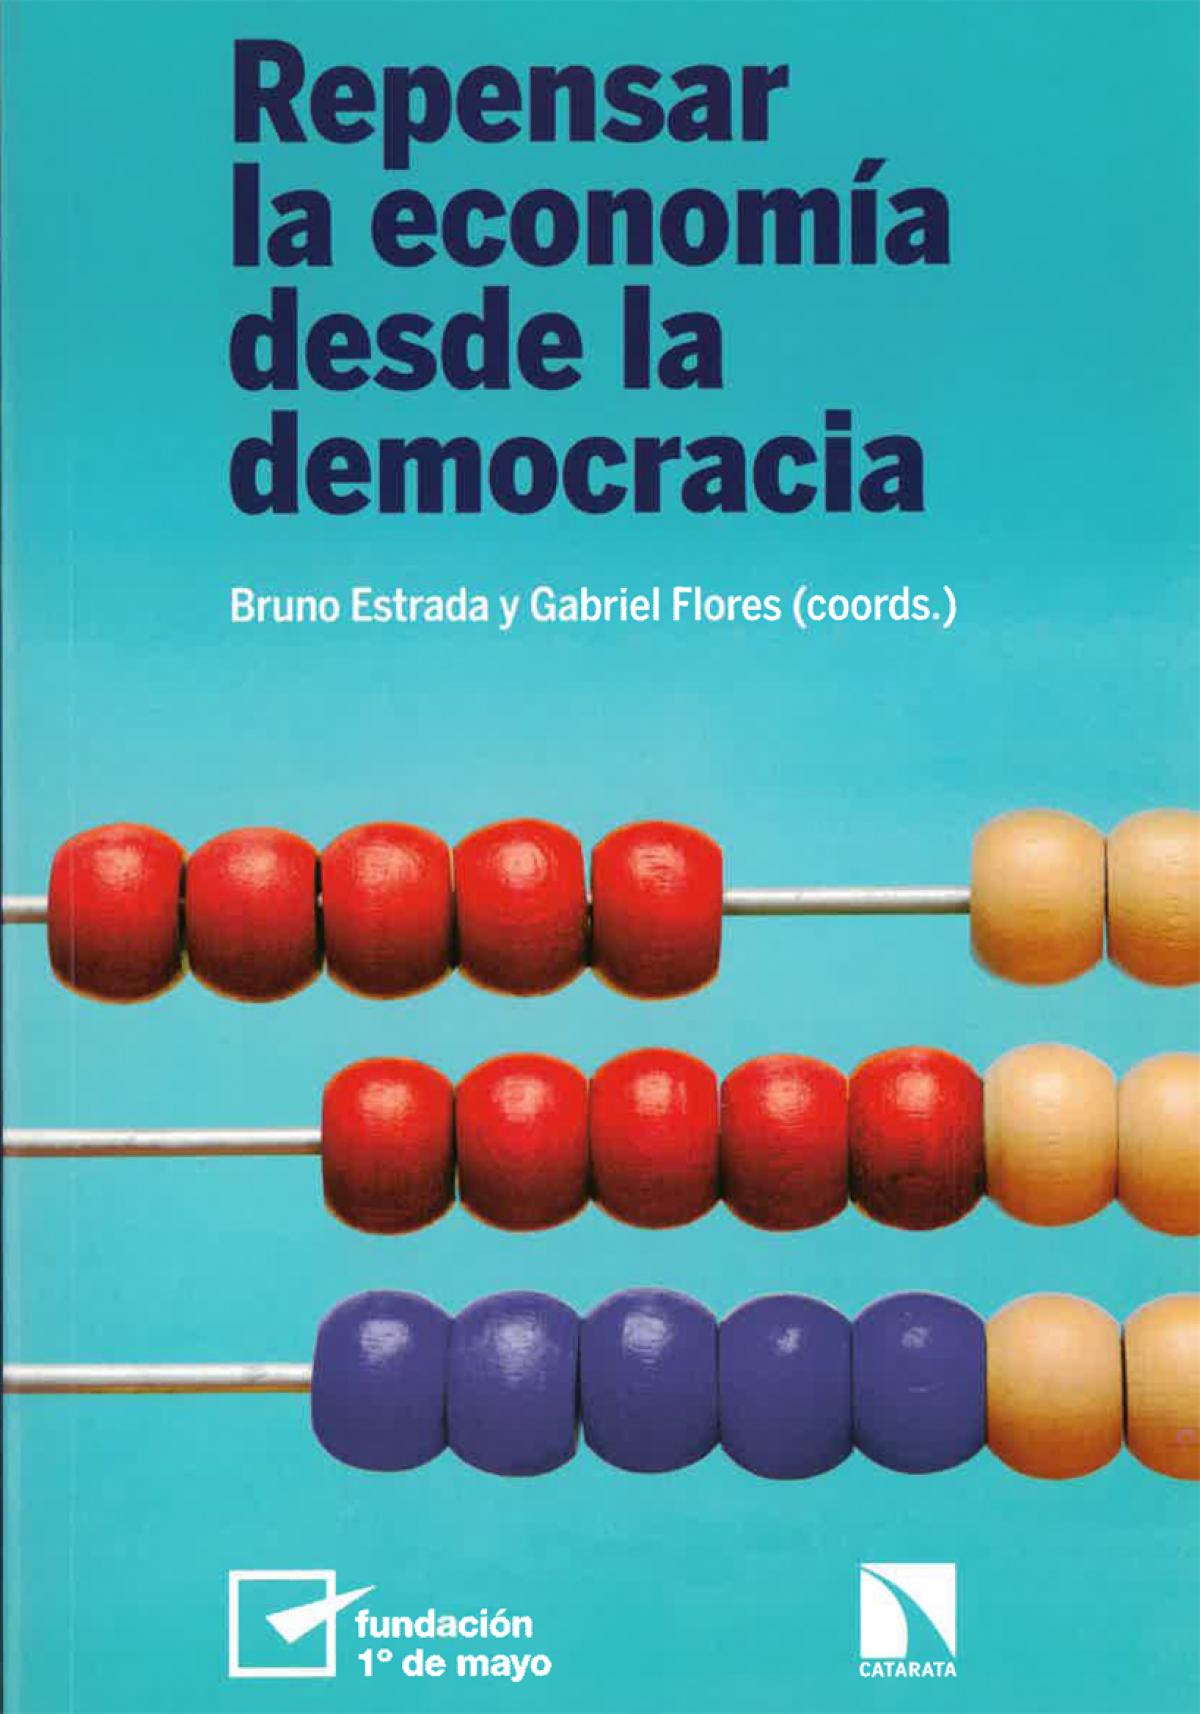 Portada libro "Repensar la economía desde la democracia"